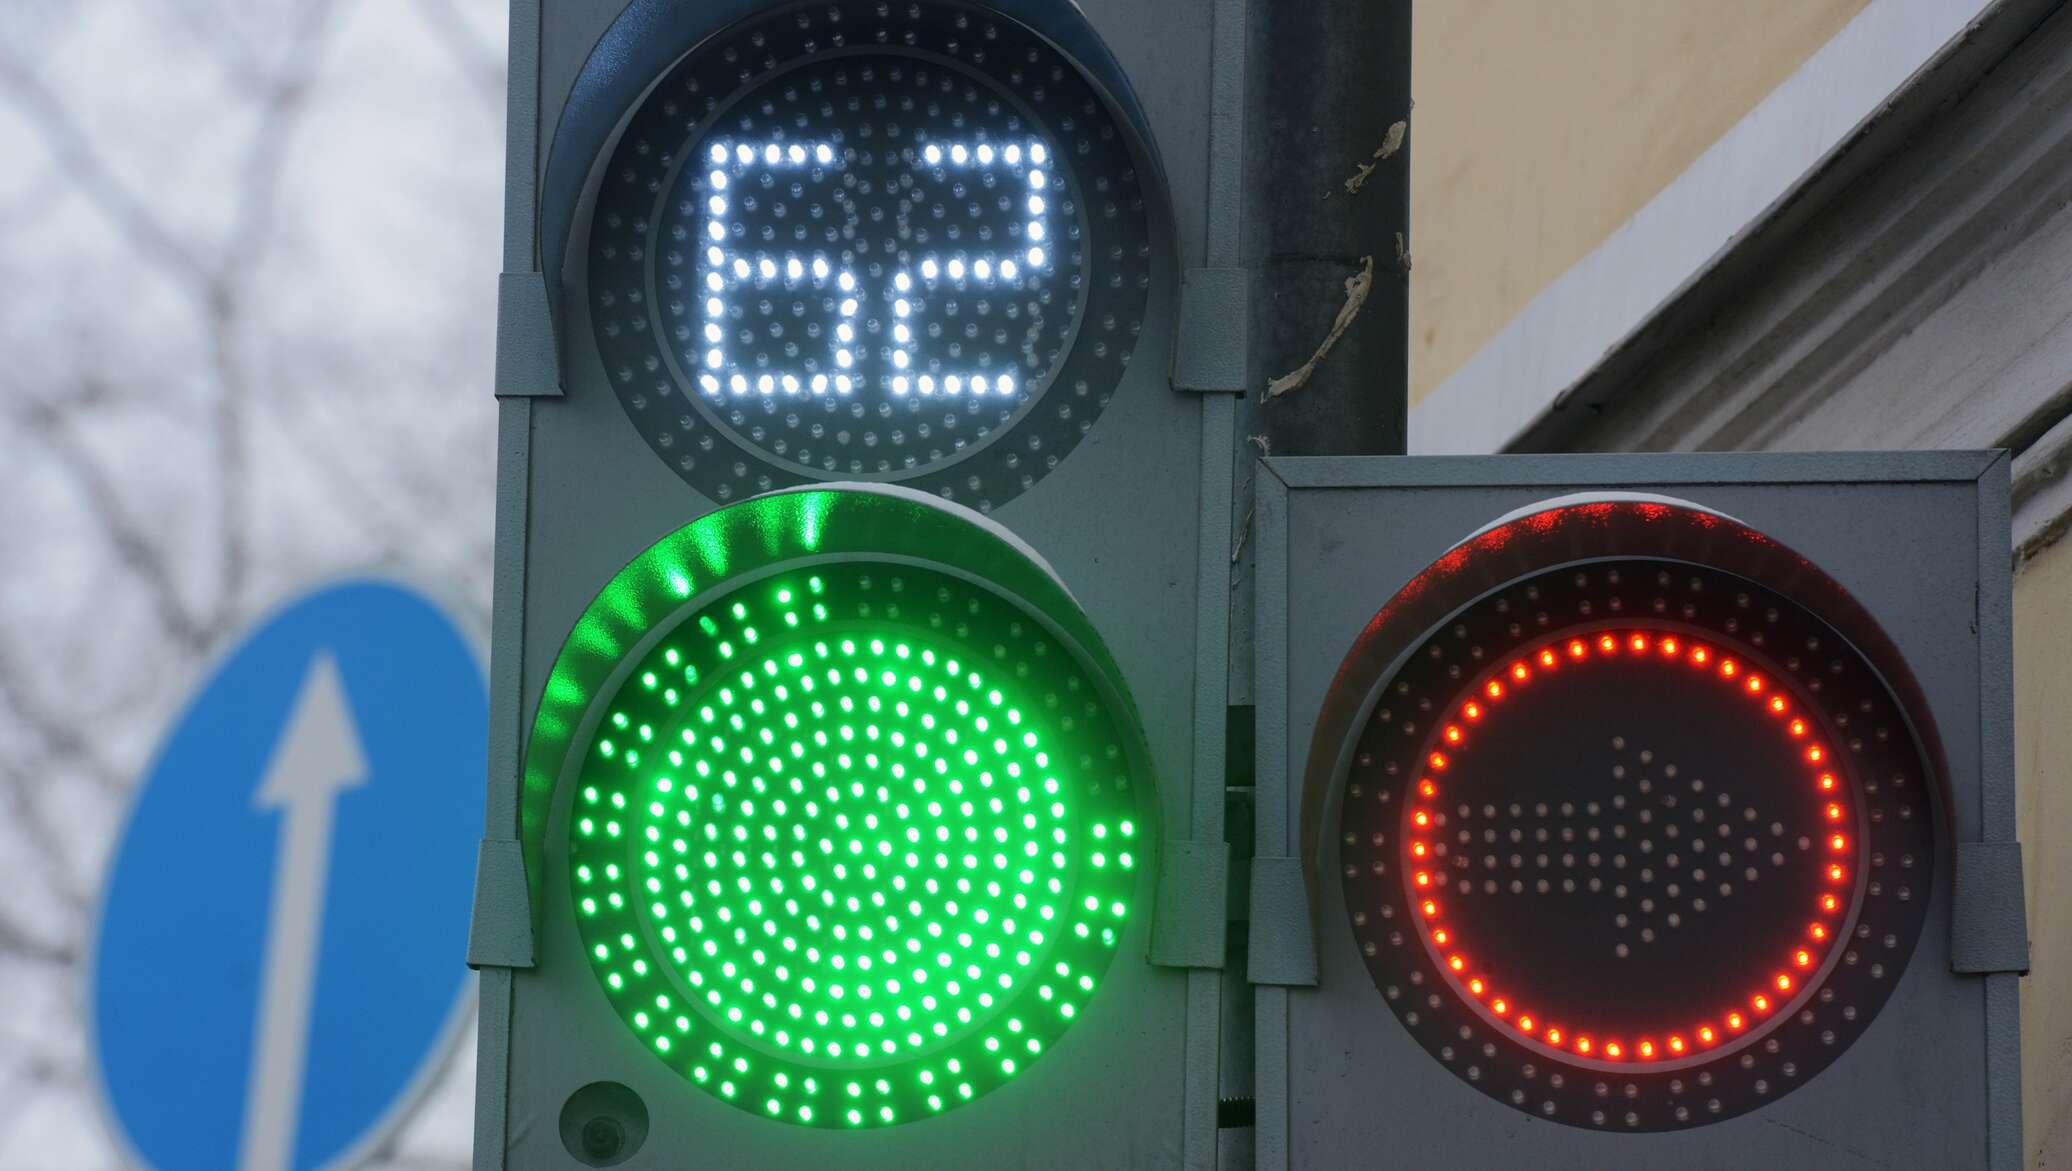 Светофоры всегда зеленые. Светофор светодиодный транспортный т.1.2 с ТООВ (300 мм). Светофор светодиодный двухсекционный красный зеленый. Светофор с цифрами. Зеленый сигнал светофора.